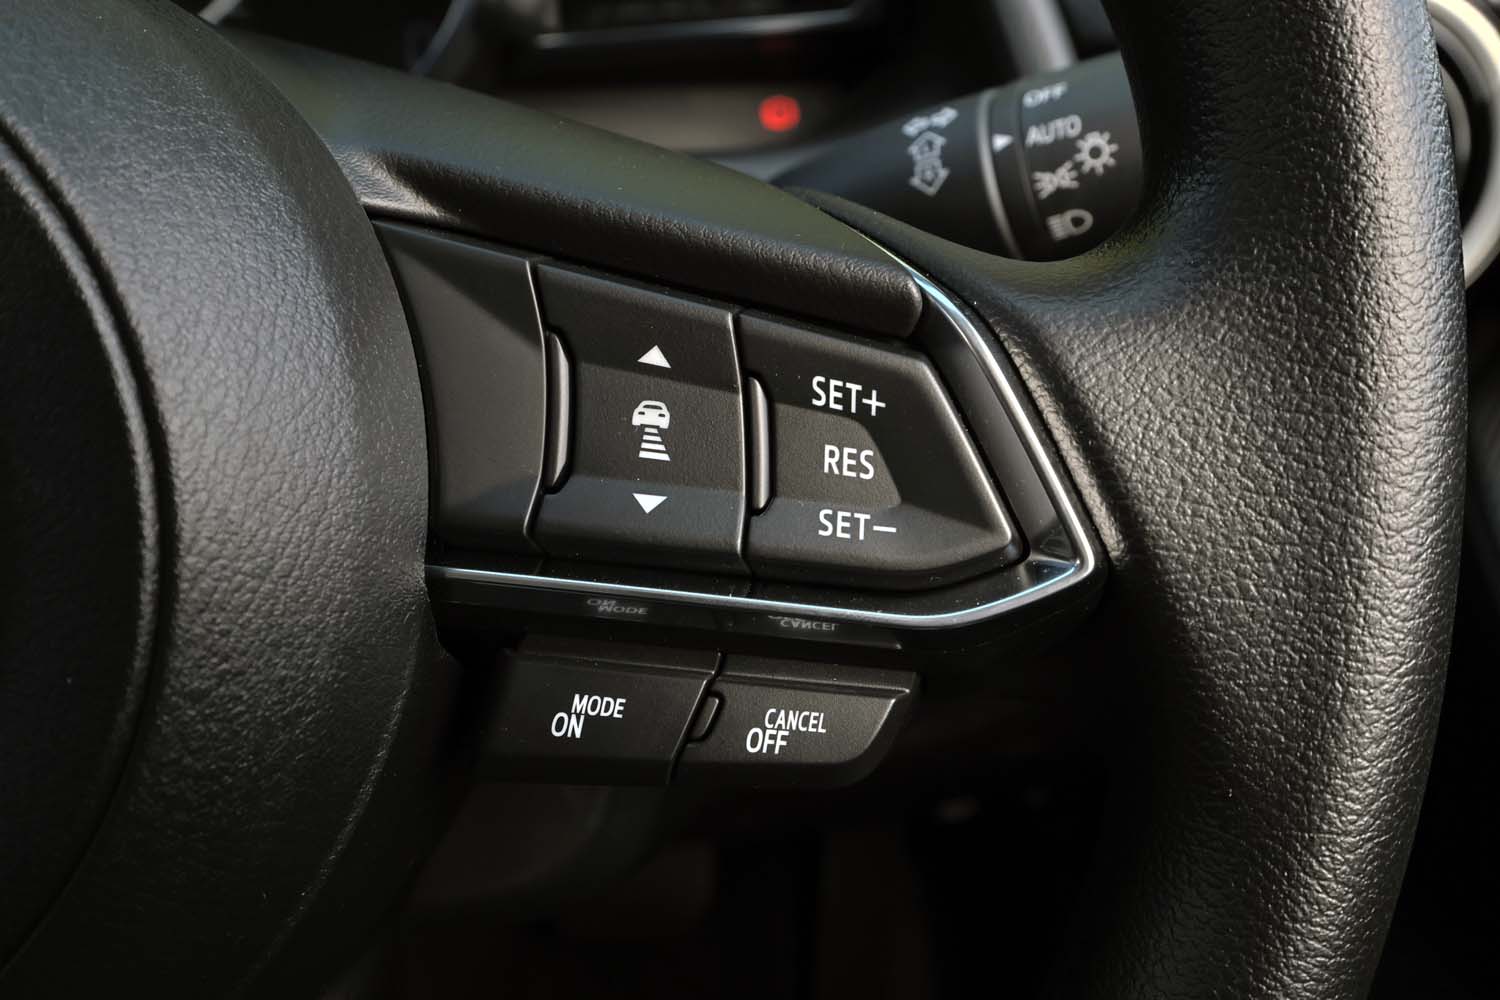 「BD」では、アダプティブクルーズコントロールや車線維持支援機能、交通標識読み取り機能などの運転支援システムはオプション扱いとなる。